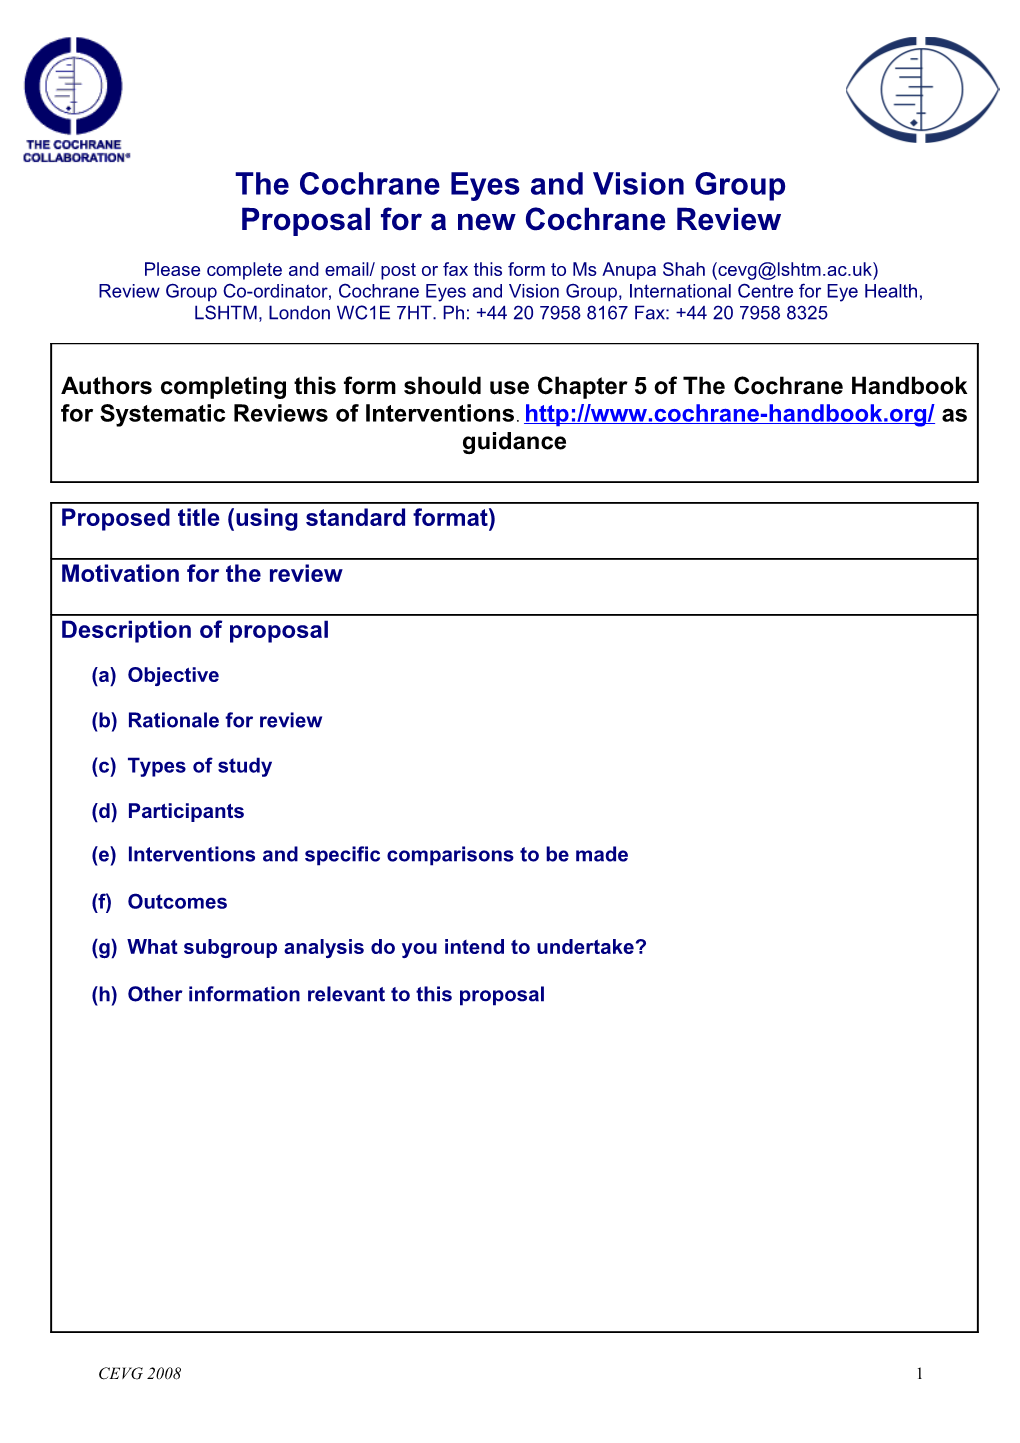 CEVG Title Registration Form